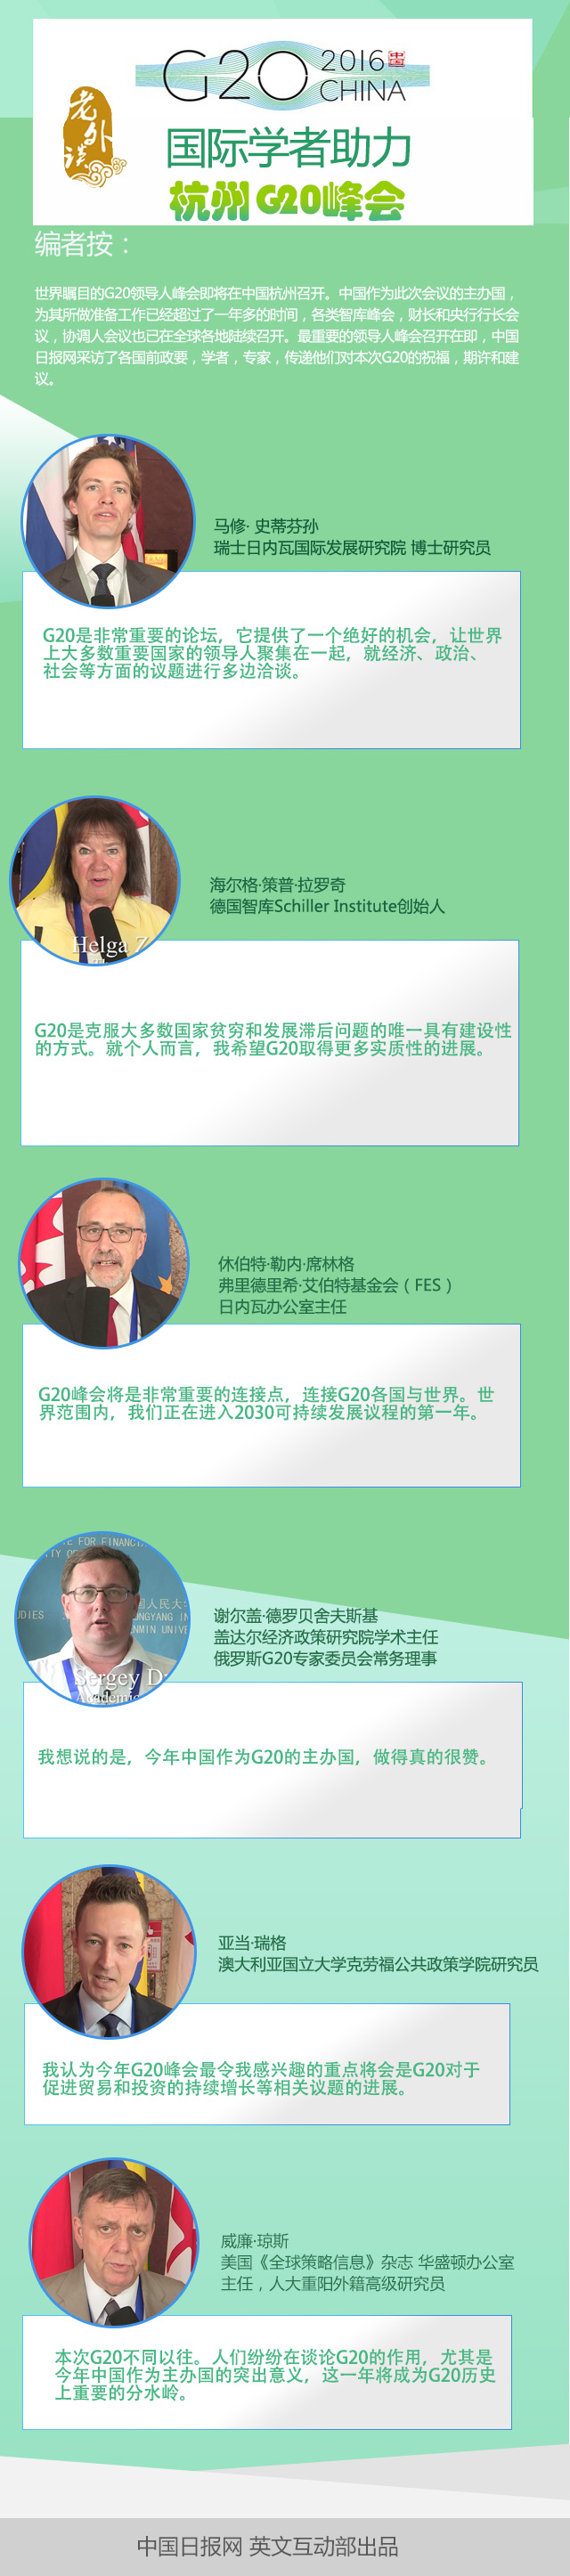 各國學者助力杭州G20峰會